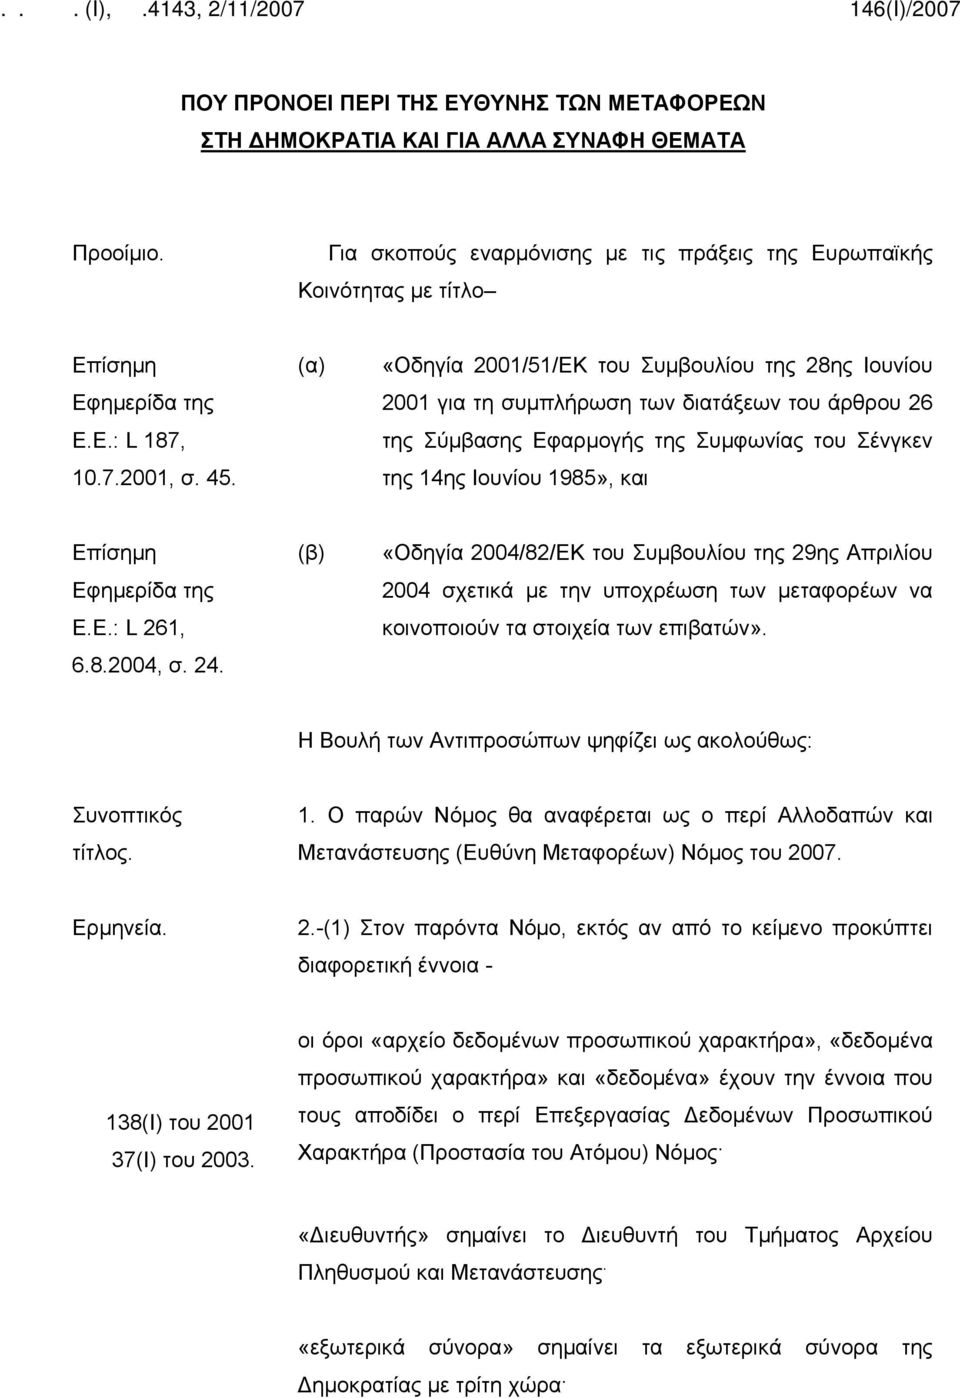 (α) «Οδηγία 2001/51/ΕΚ του Συμβουλίου της 28ης Ιουνίου 2001 για τη συμπλήρωση των διατάξεων του άρθρου 26 της Σύμβασης Εφαρμογής της Συμφωνίας του Σένγκεν της 14ης Ιουνίου 1985», και Επίσημη